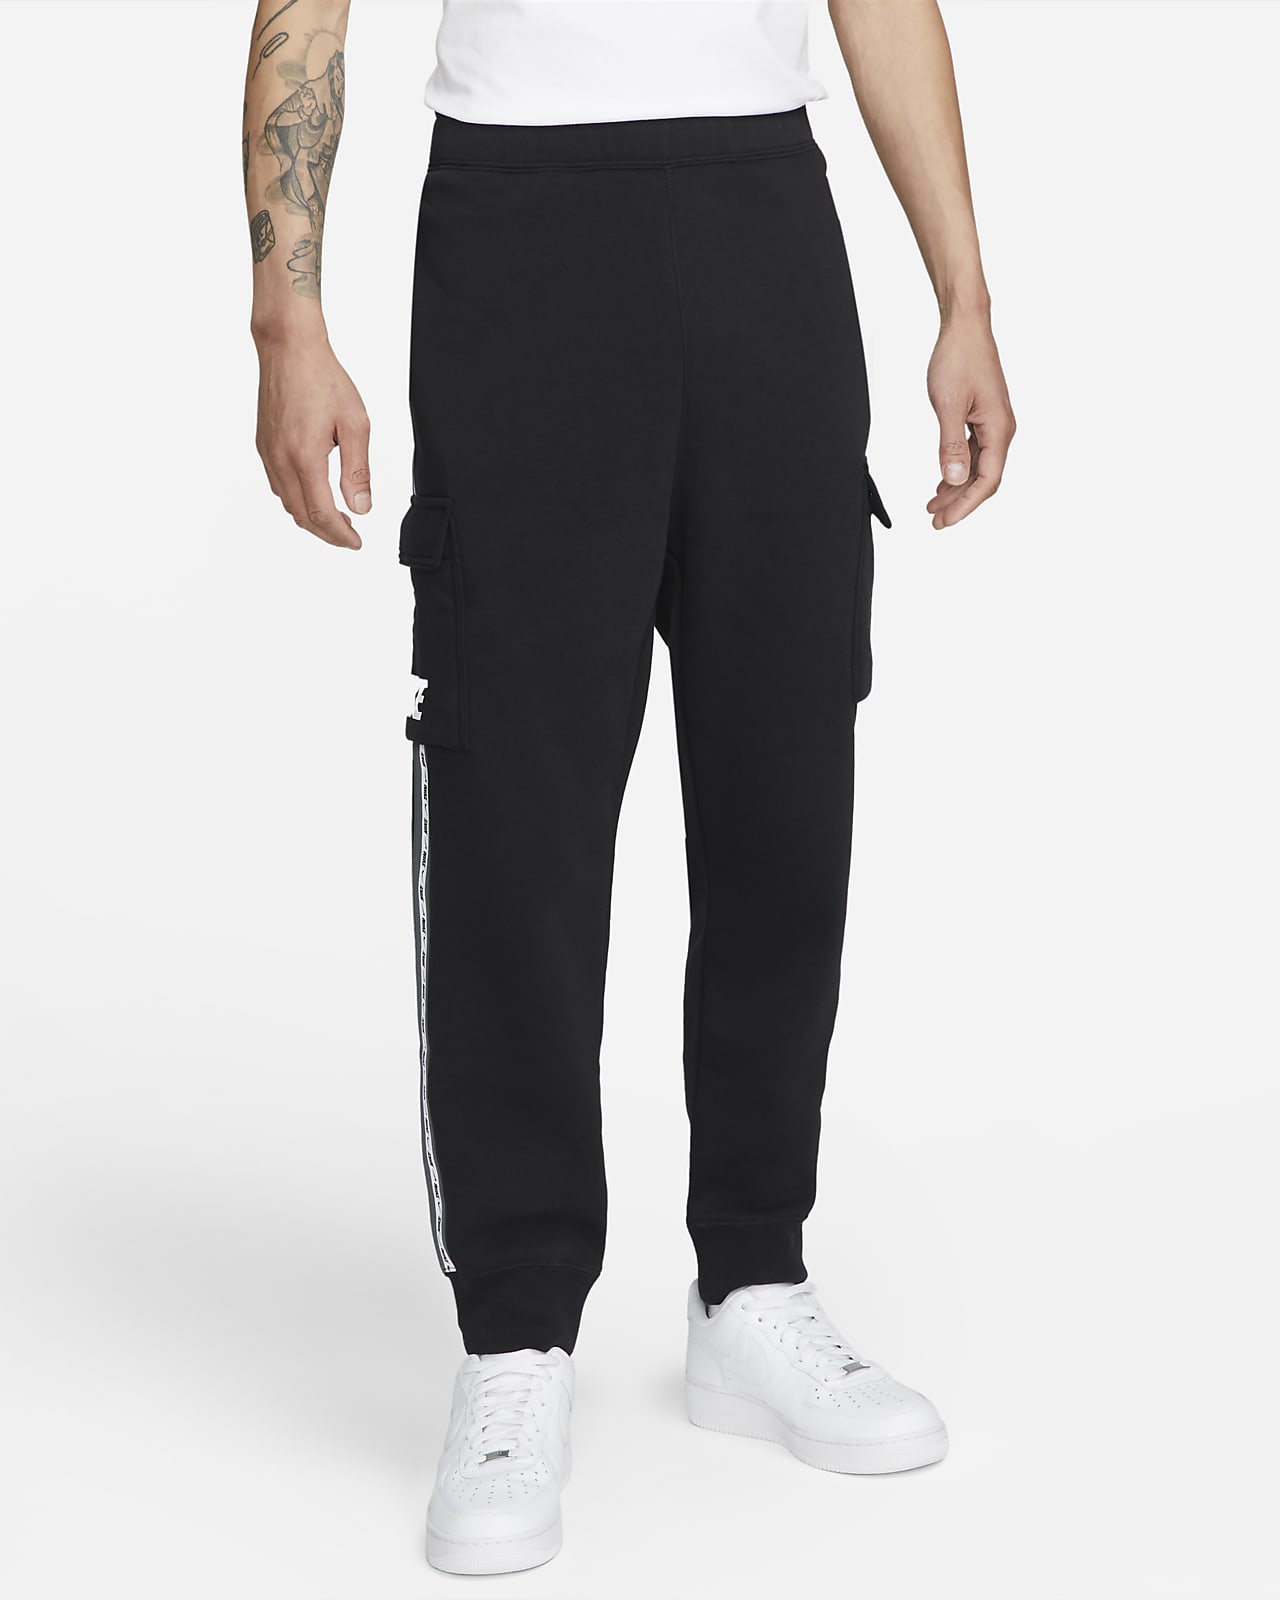 Nike Sportswear Men's Fleece Cargo Trousers